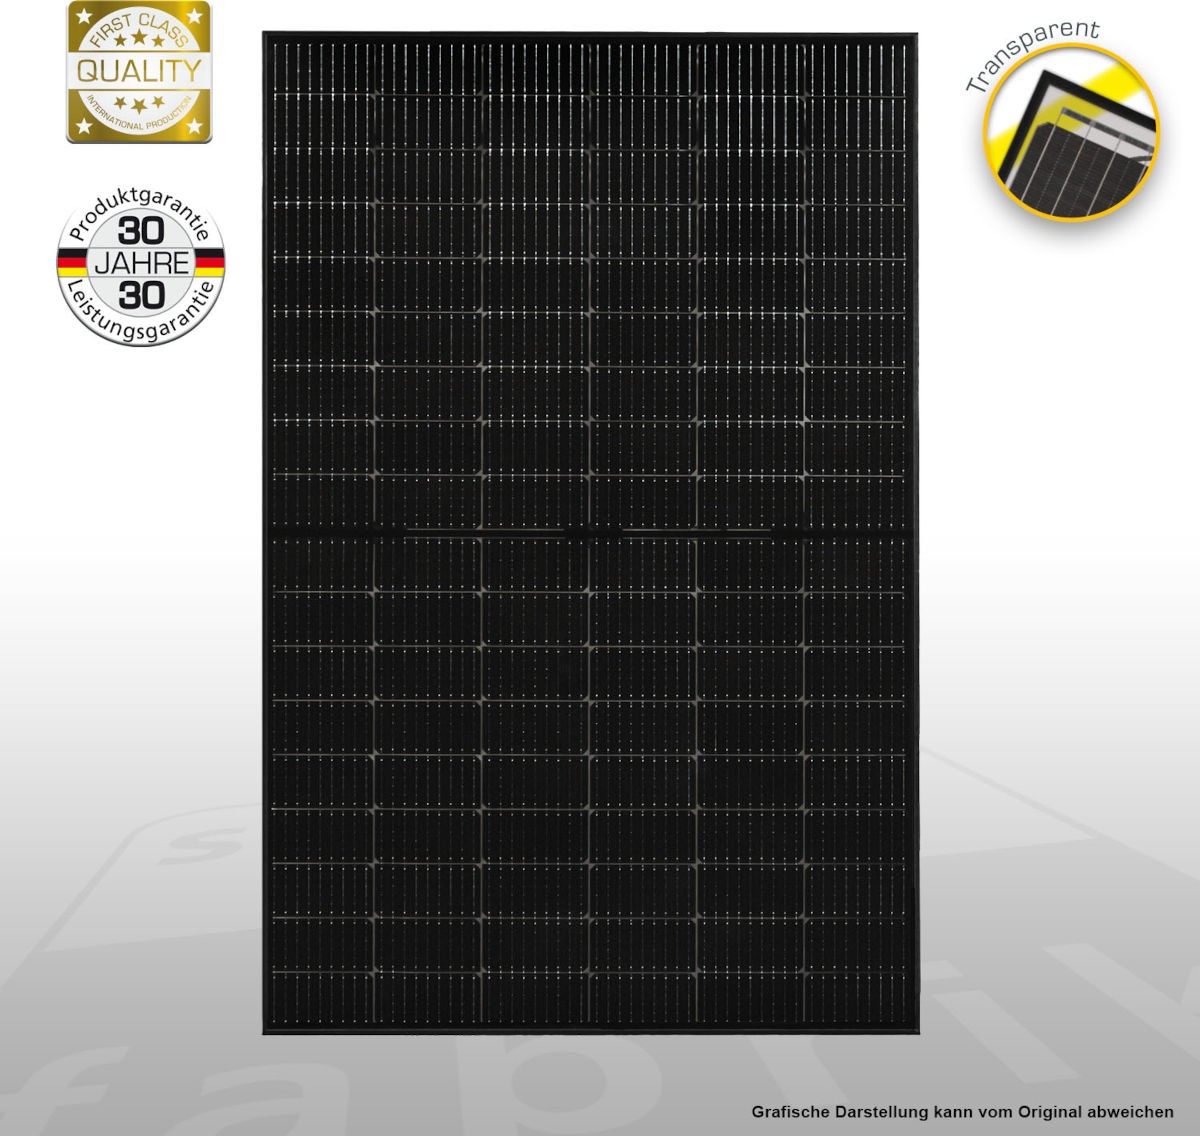 Solar-Modul Solar Fabrik Mono S4 IVP 425W, Frontalansicht, Qualitätssiegel, vor weißem Hintergrund